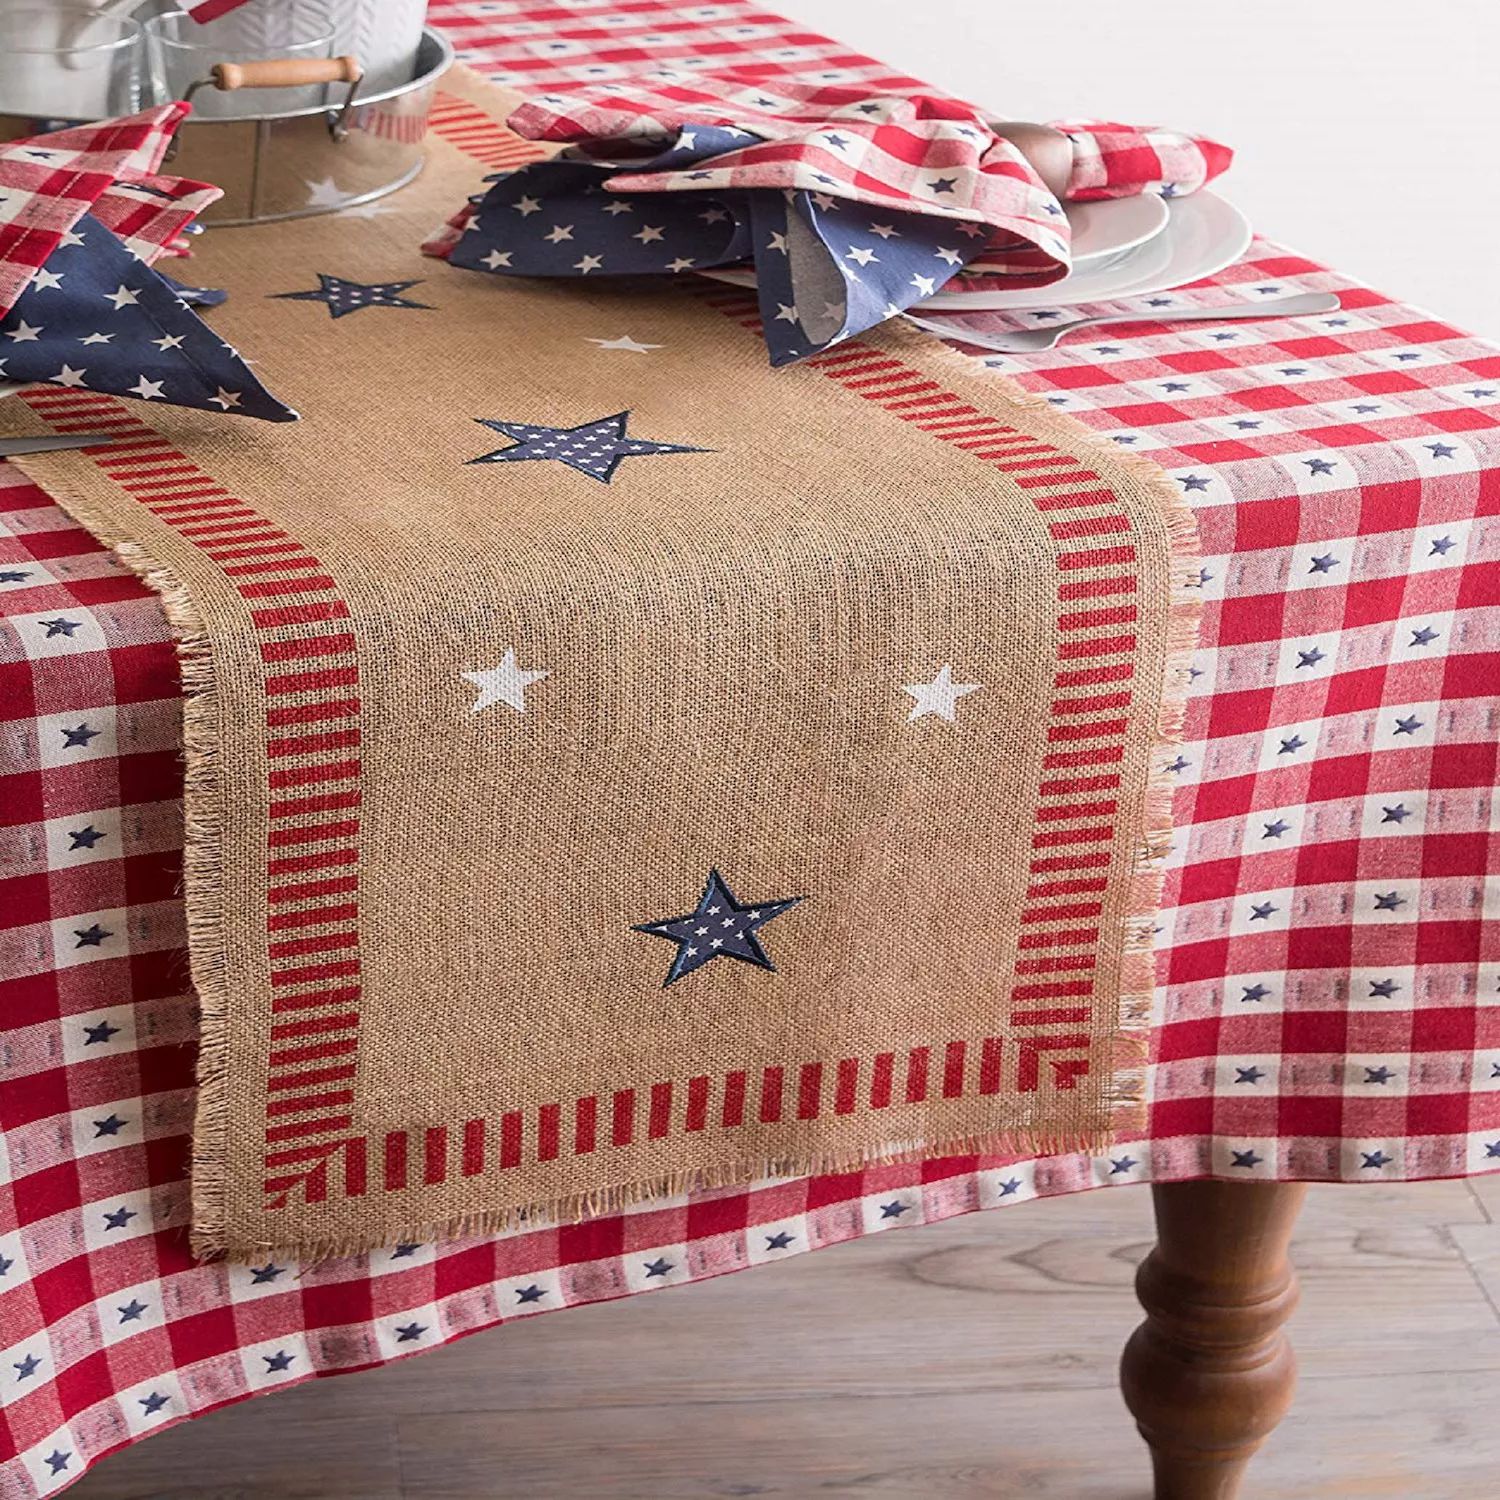 74-дюймовая дорожка для стола из мешковины Americana со звездами и полосами, 4 июля